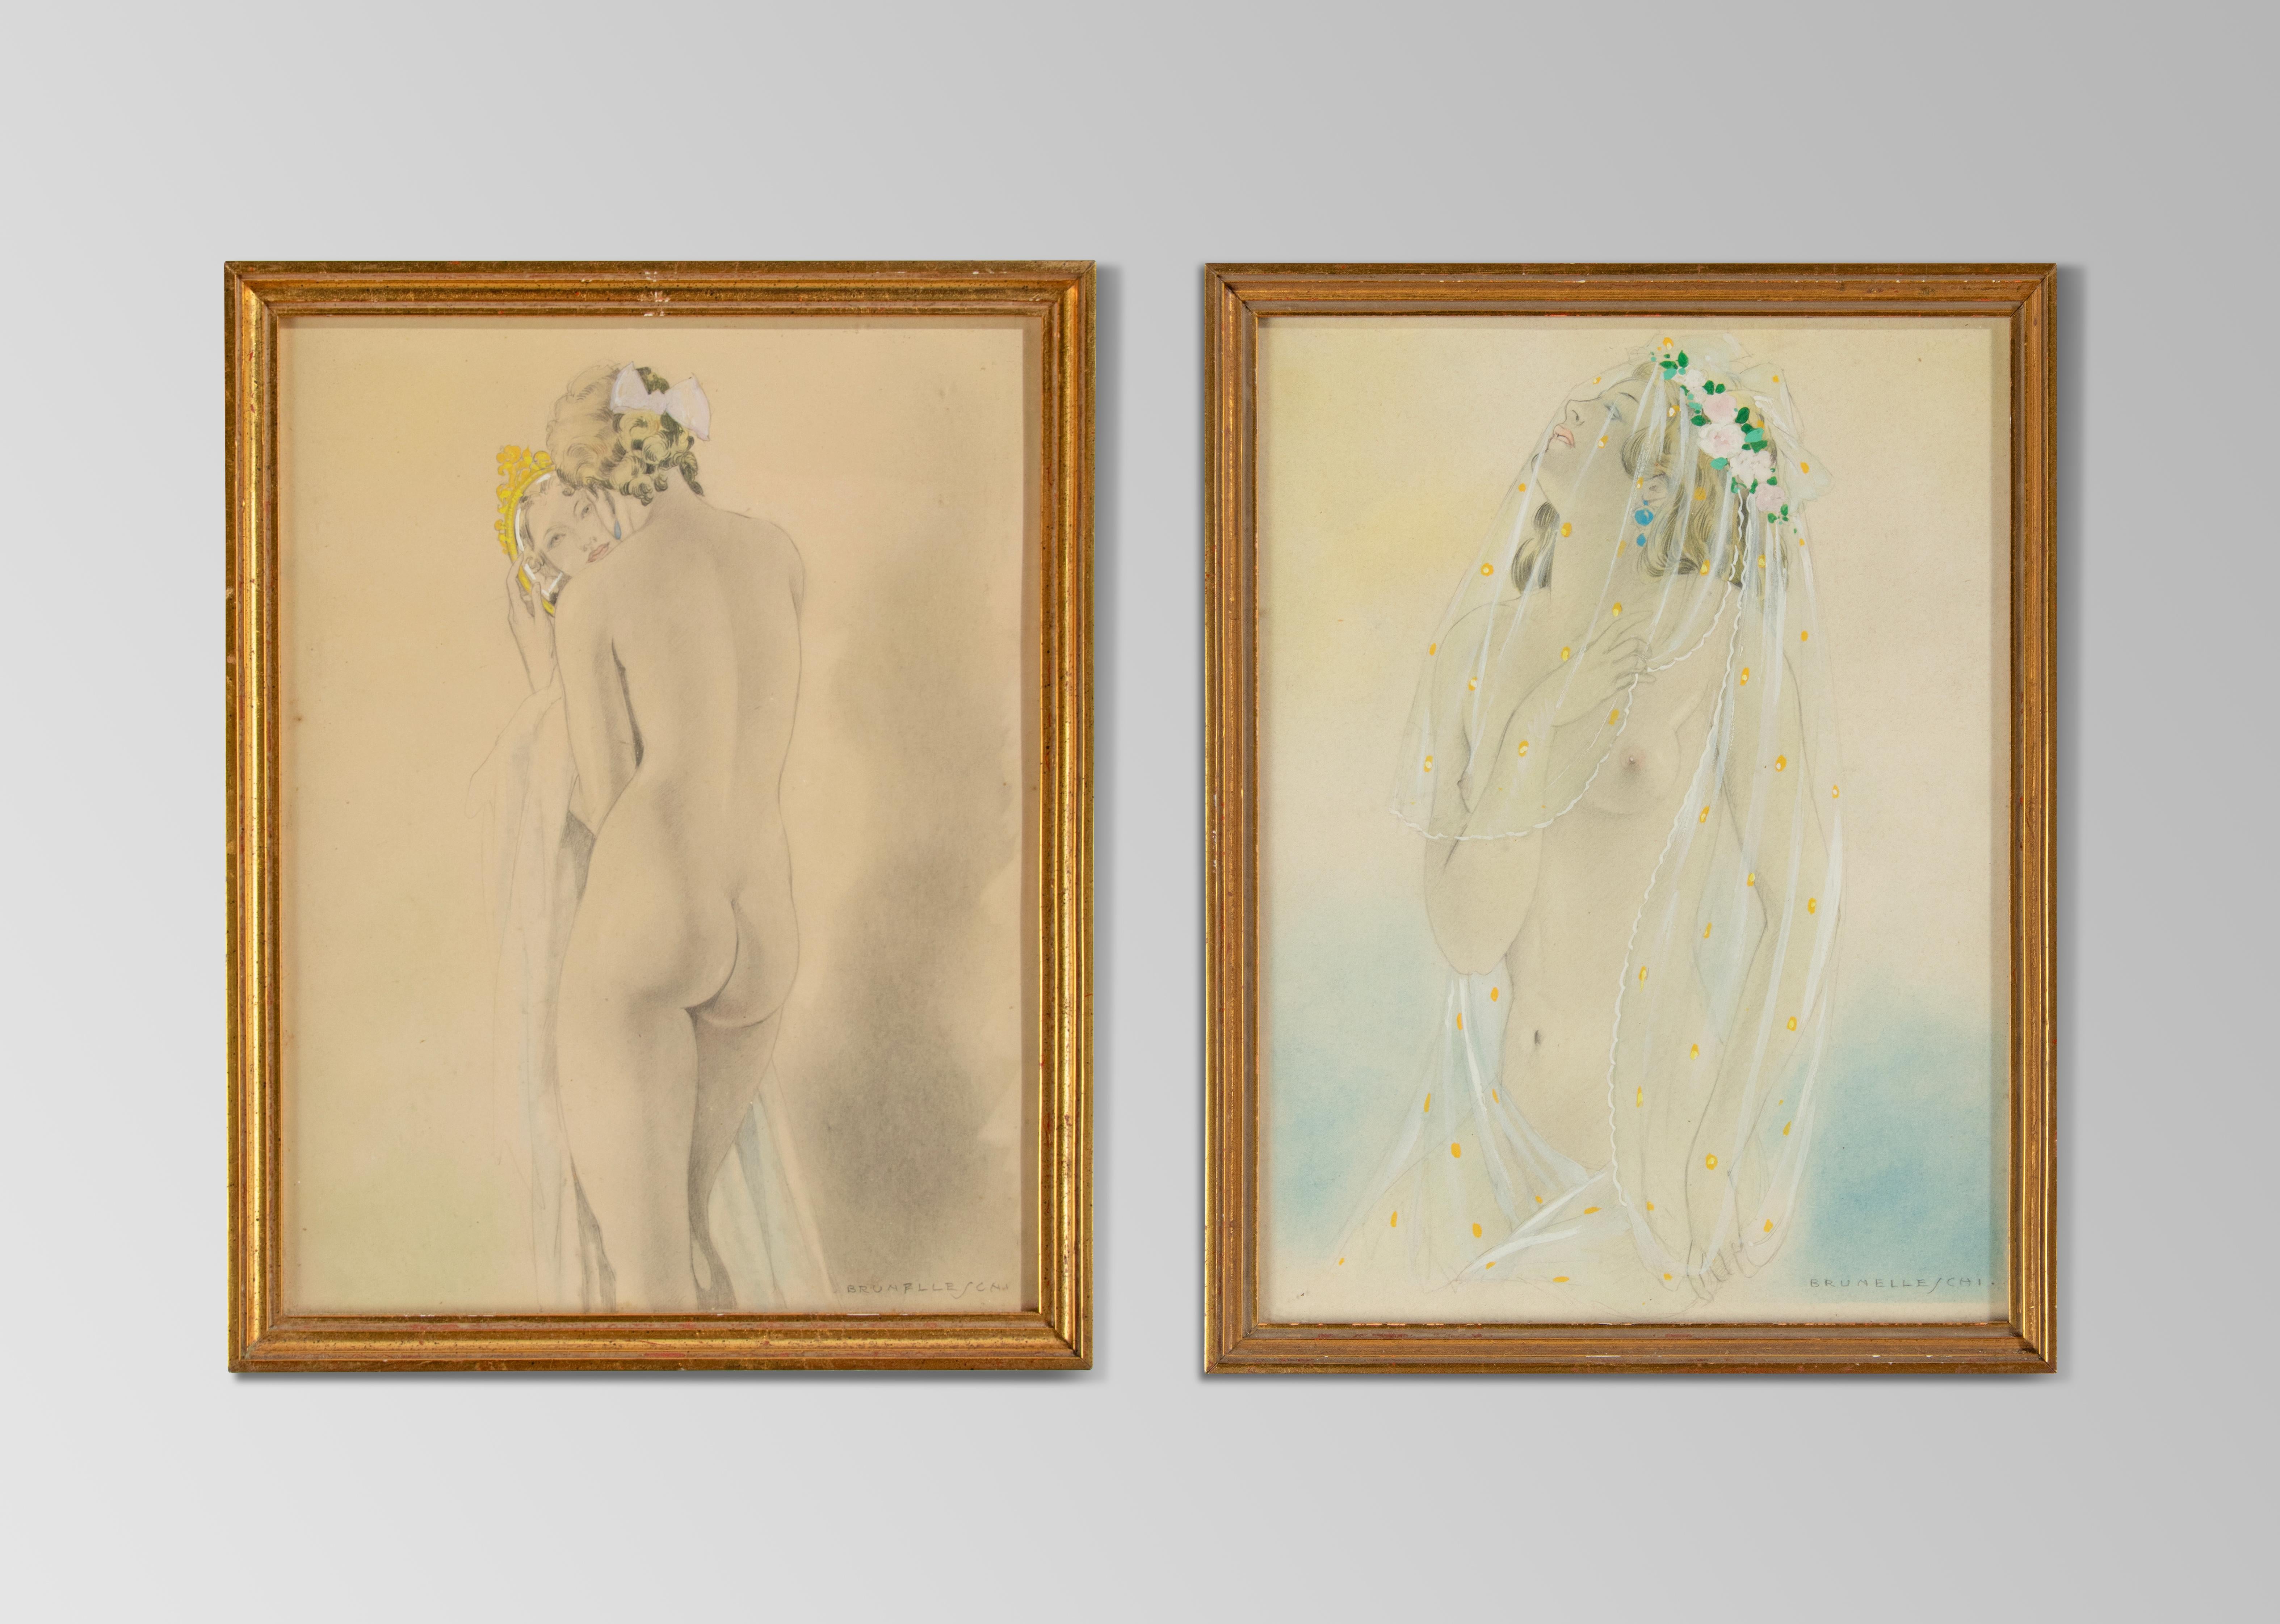 Ein paar schöne Kunstwerke des italienischen Künstlers Umberto Brunelleschi. Es handelt sich um leicht erotisch anmutende weibliche Akte mit einer schönen Darstellung von transparenten Stoffen.
Abmessungen Rahmen: 25,5 x 20 cm
Abmessungen Papier: